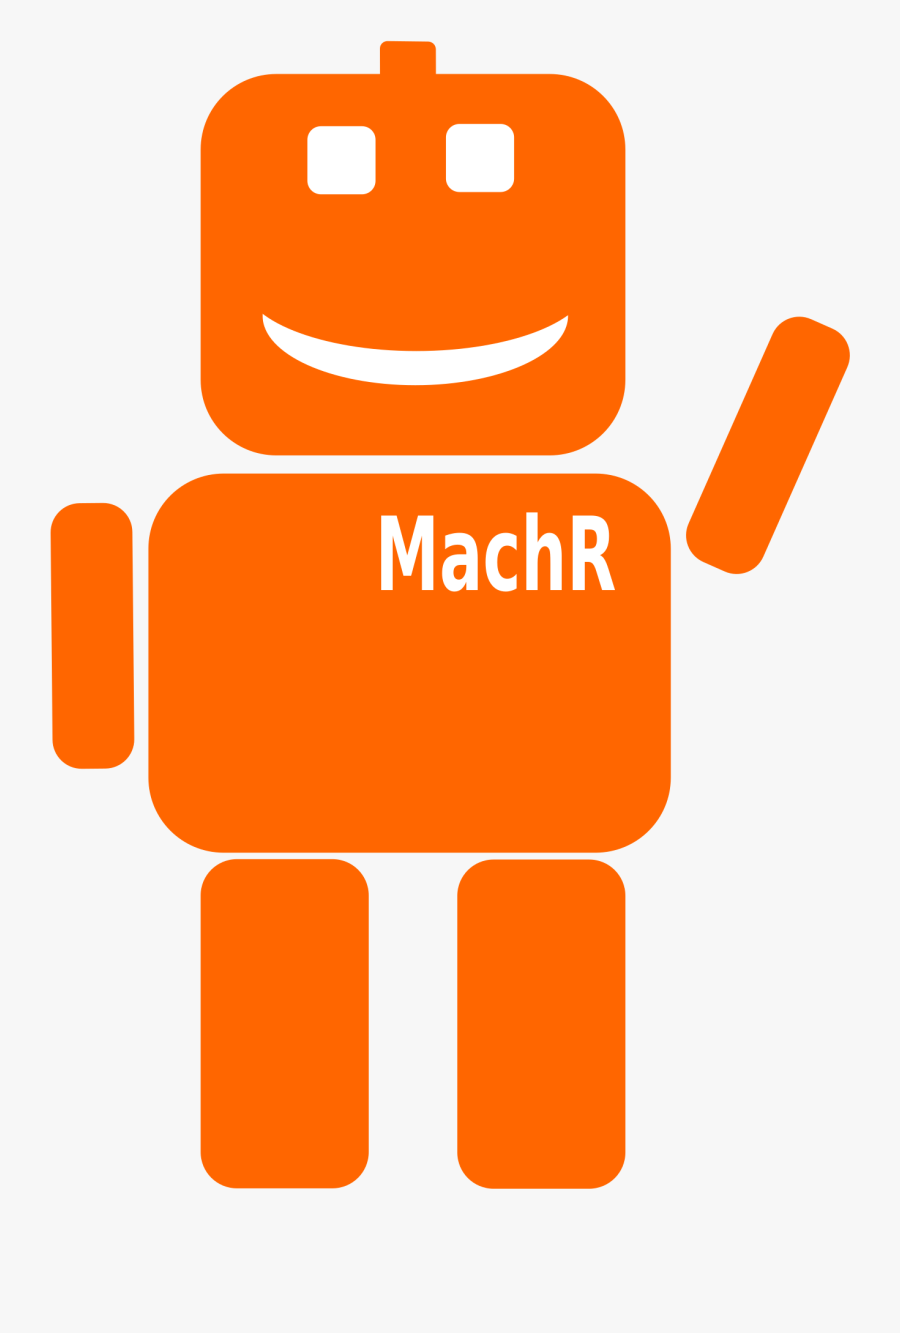 Robot Machr Smile Clip Arts - Orange Robot Clipart, Transparent Clipart